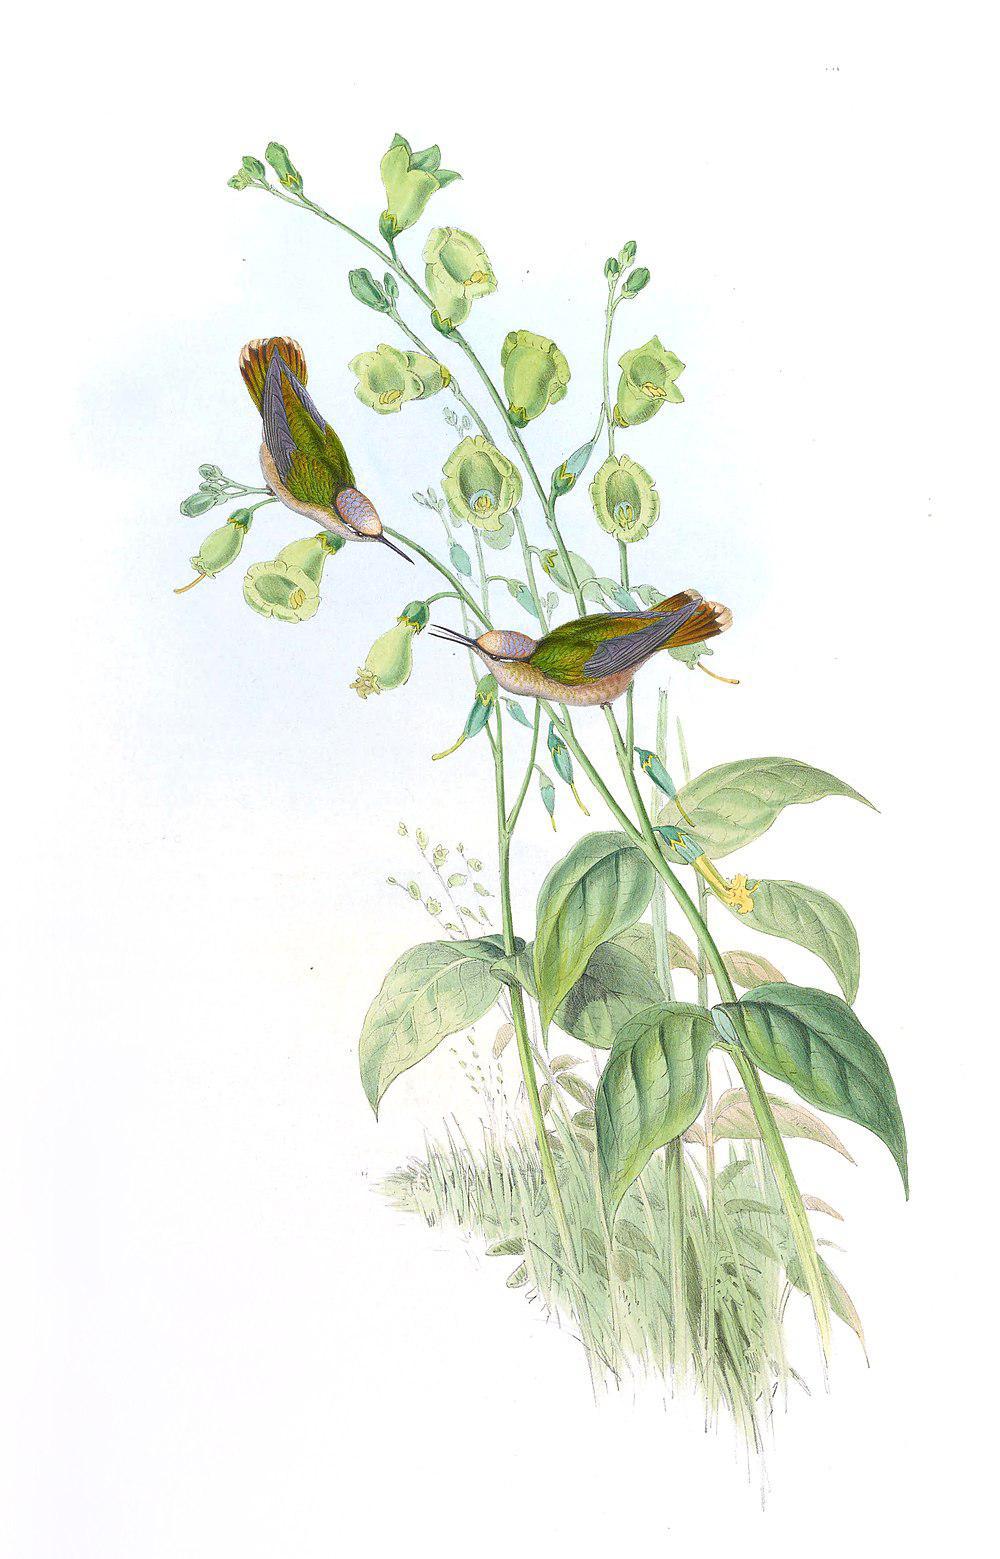 花顶蜂鸟 / Santa Marta Blossomcrown / Anthocephala floriceps